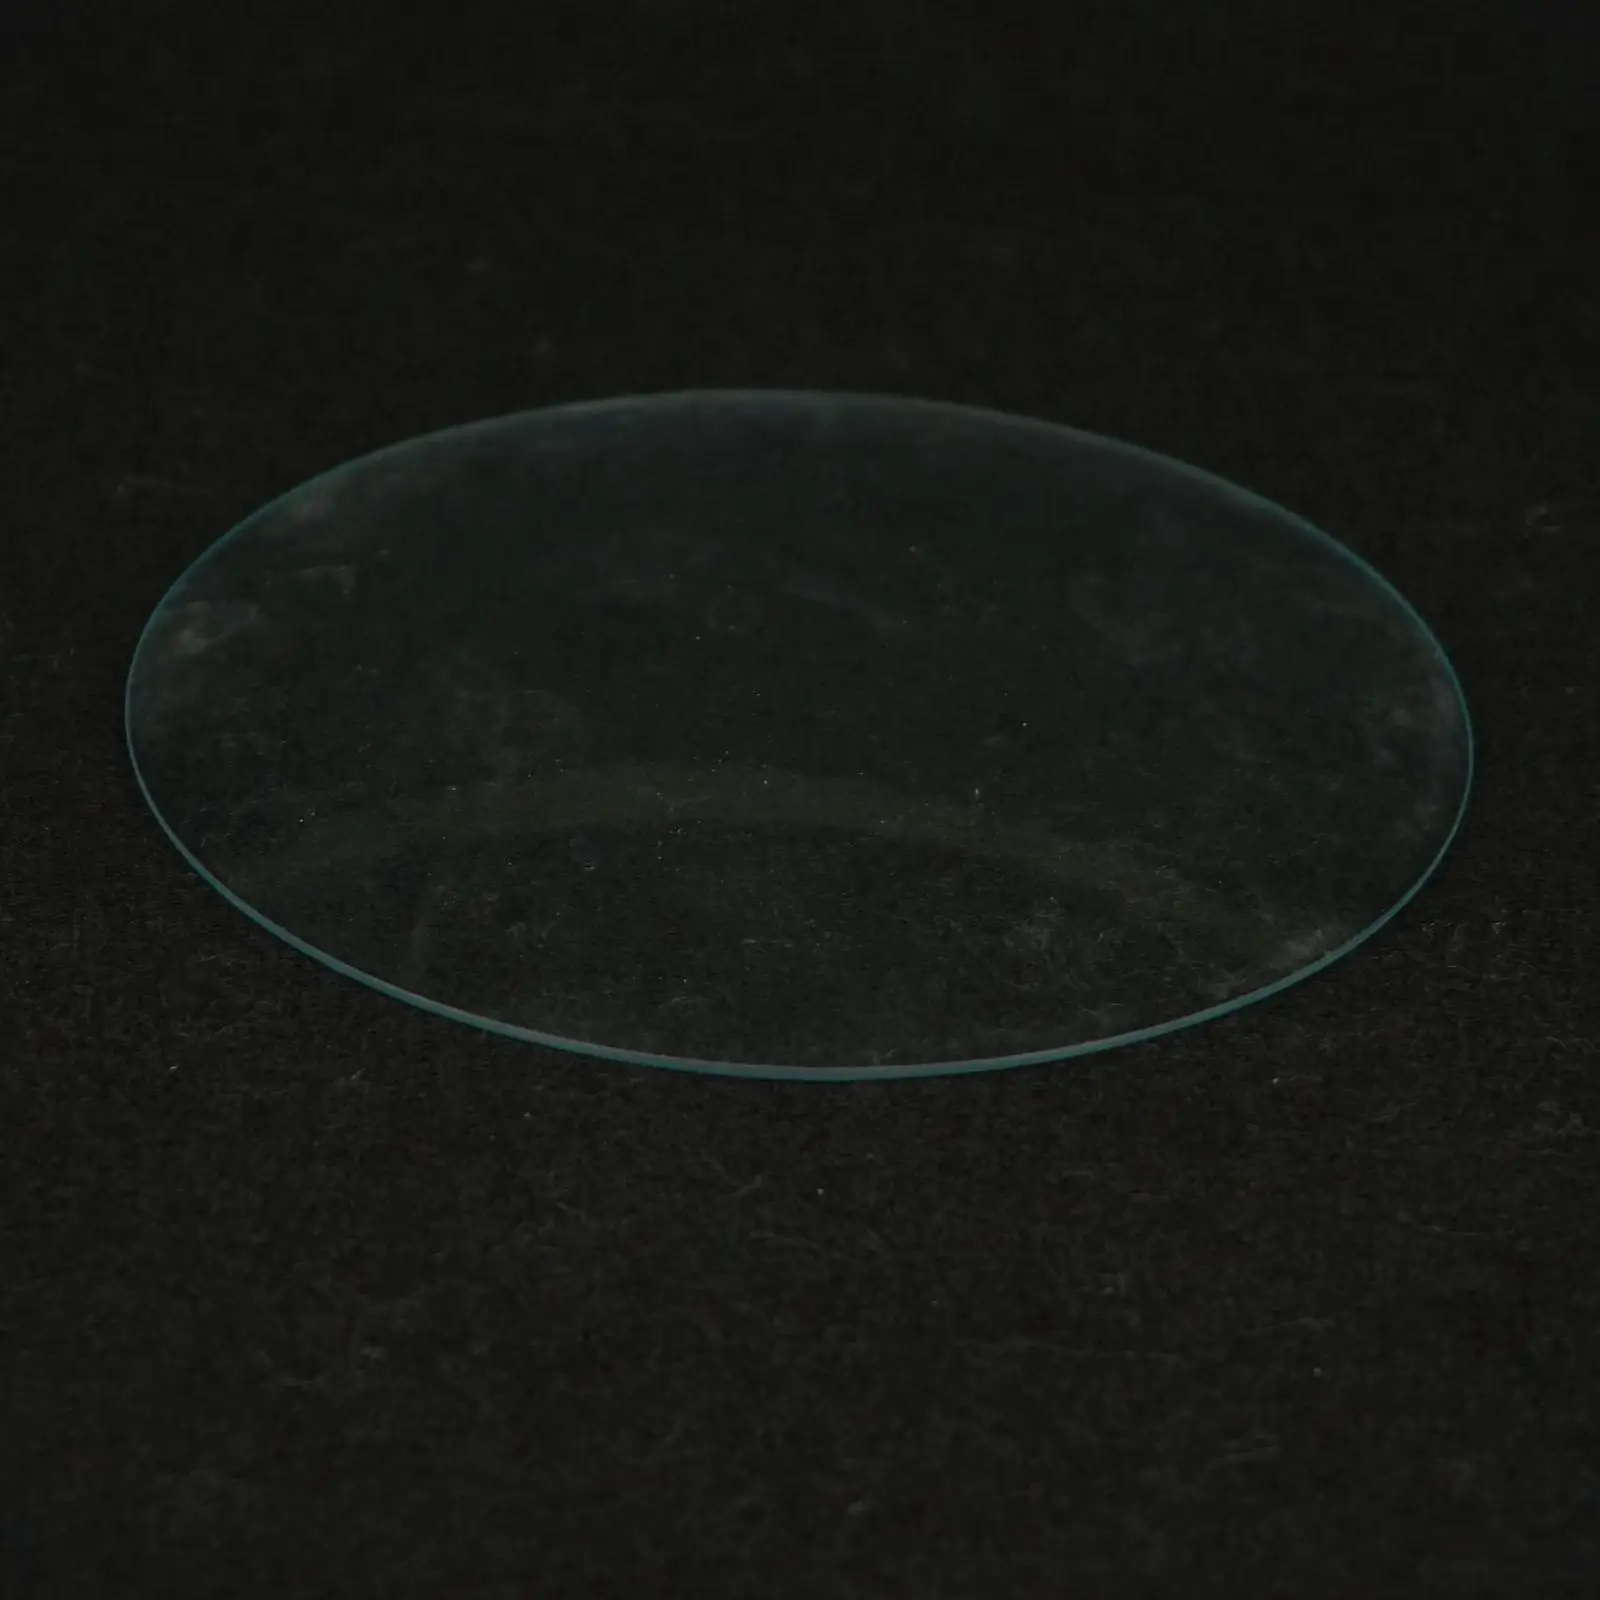 150 мм O.D стекло для часов куполообразная Жесткая крышка стакана лабораторные поставки химический эксперимент